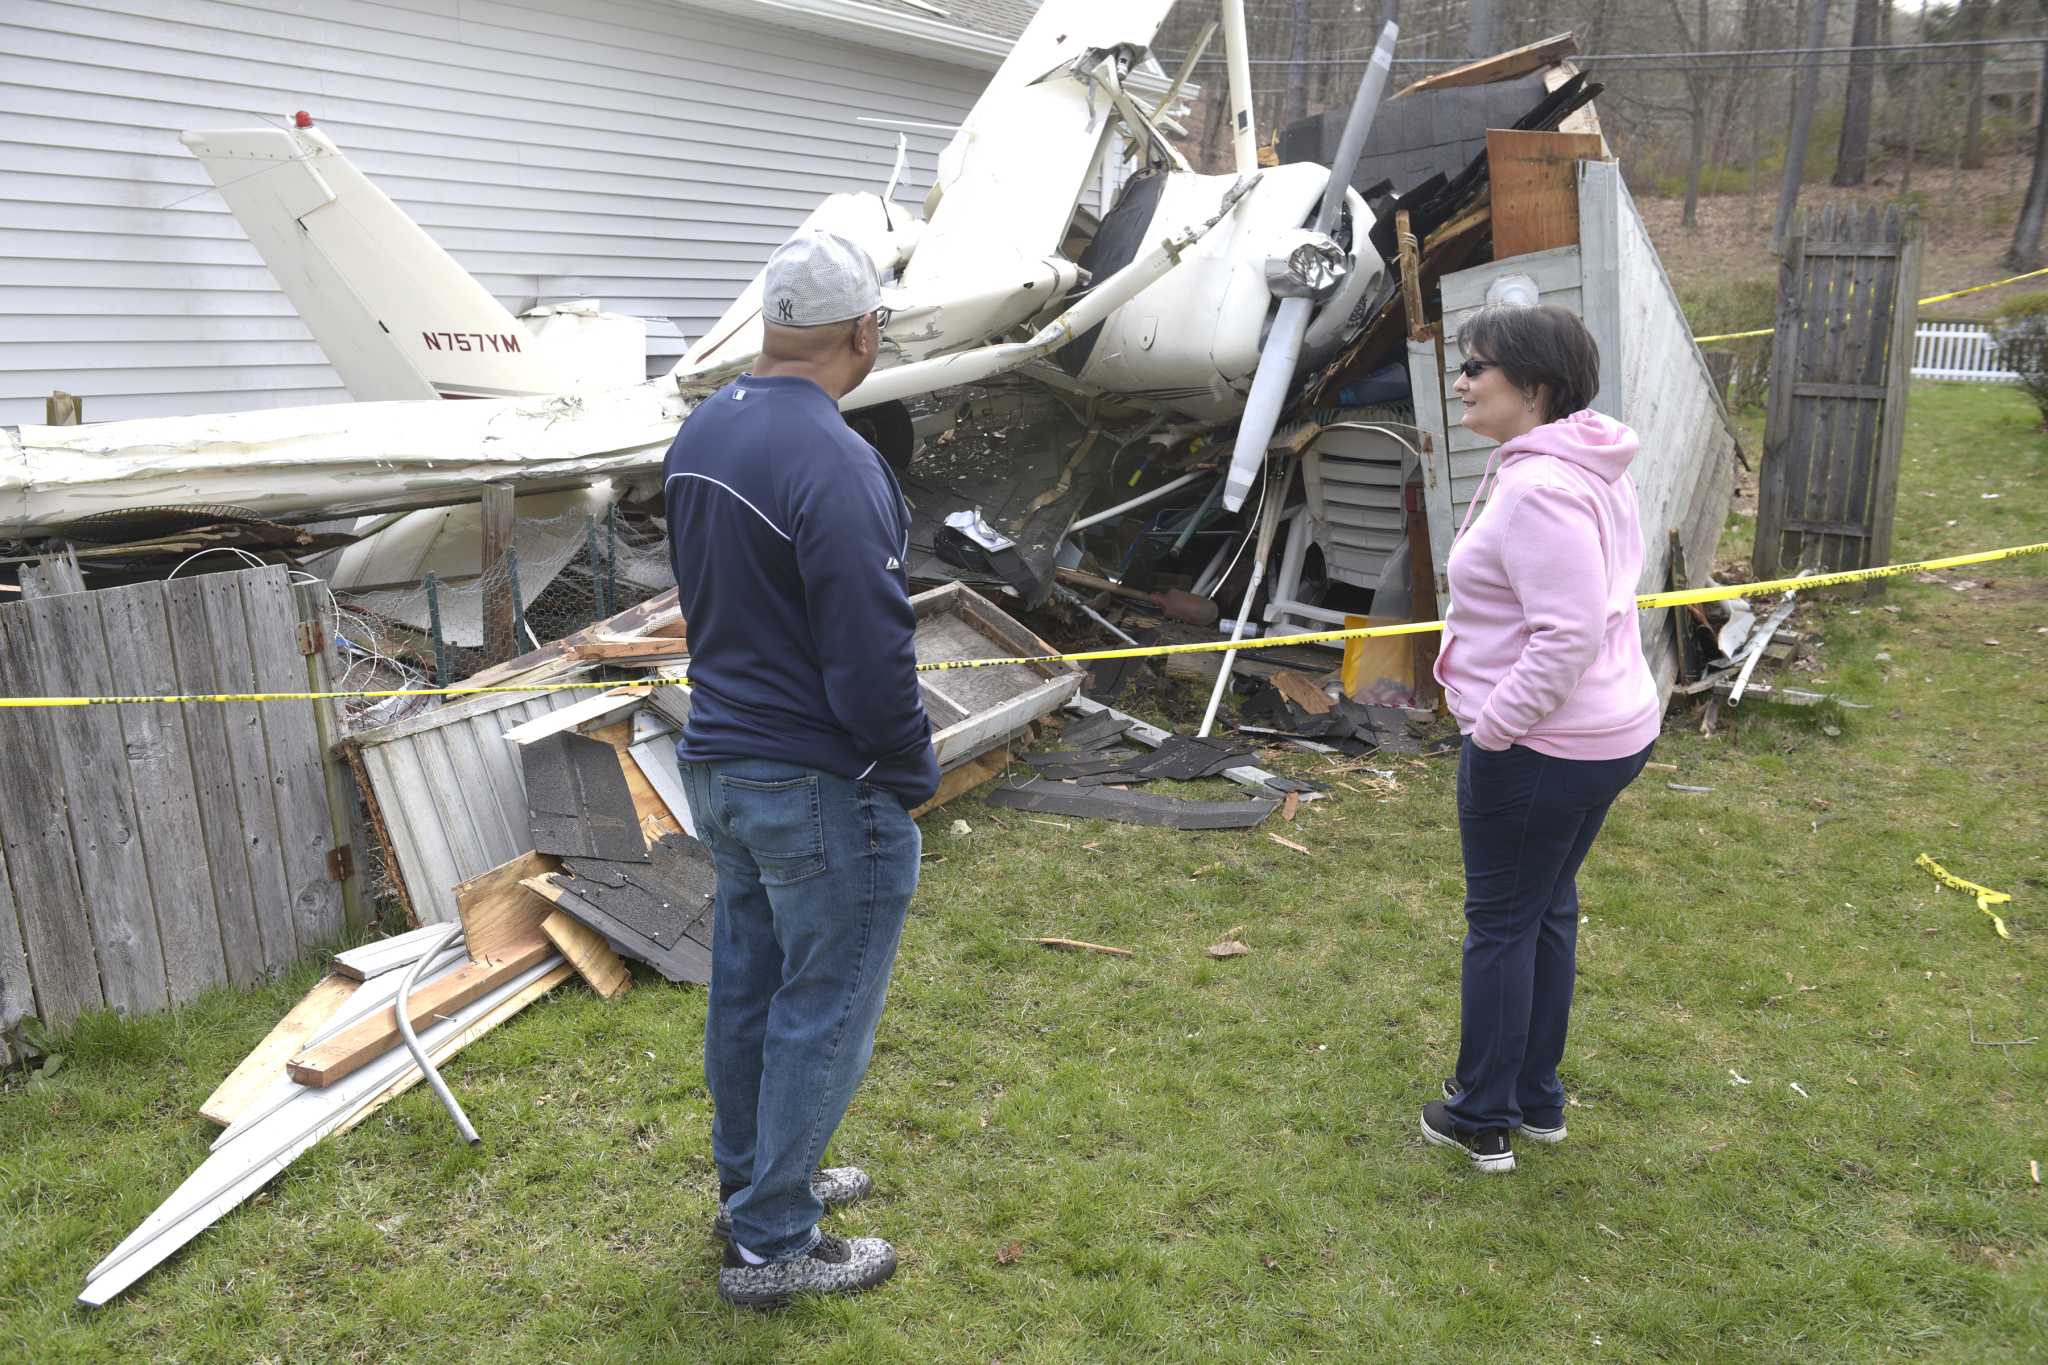 Danbury plane crash investigators assessing 'catastrophic damage'